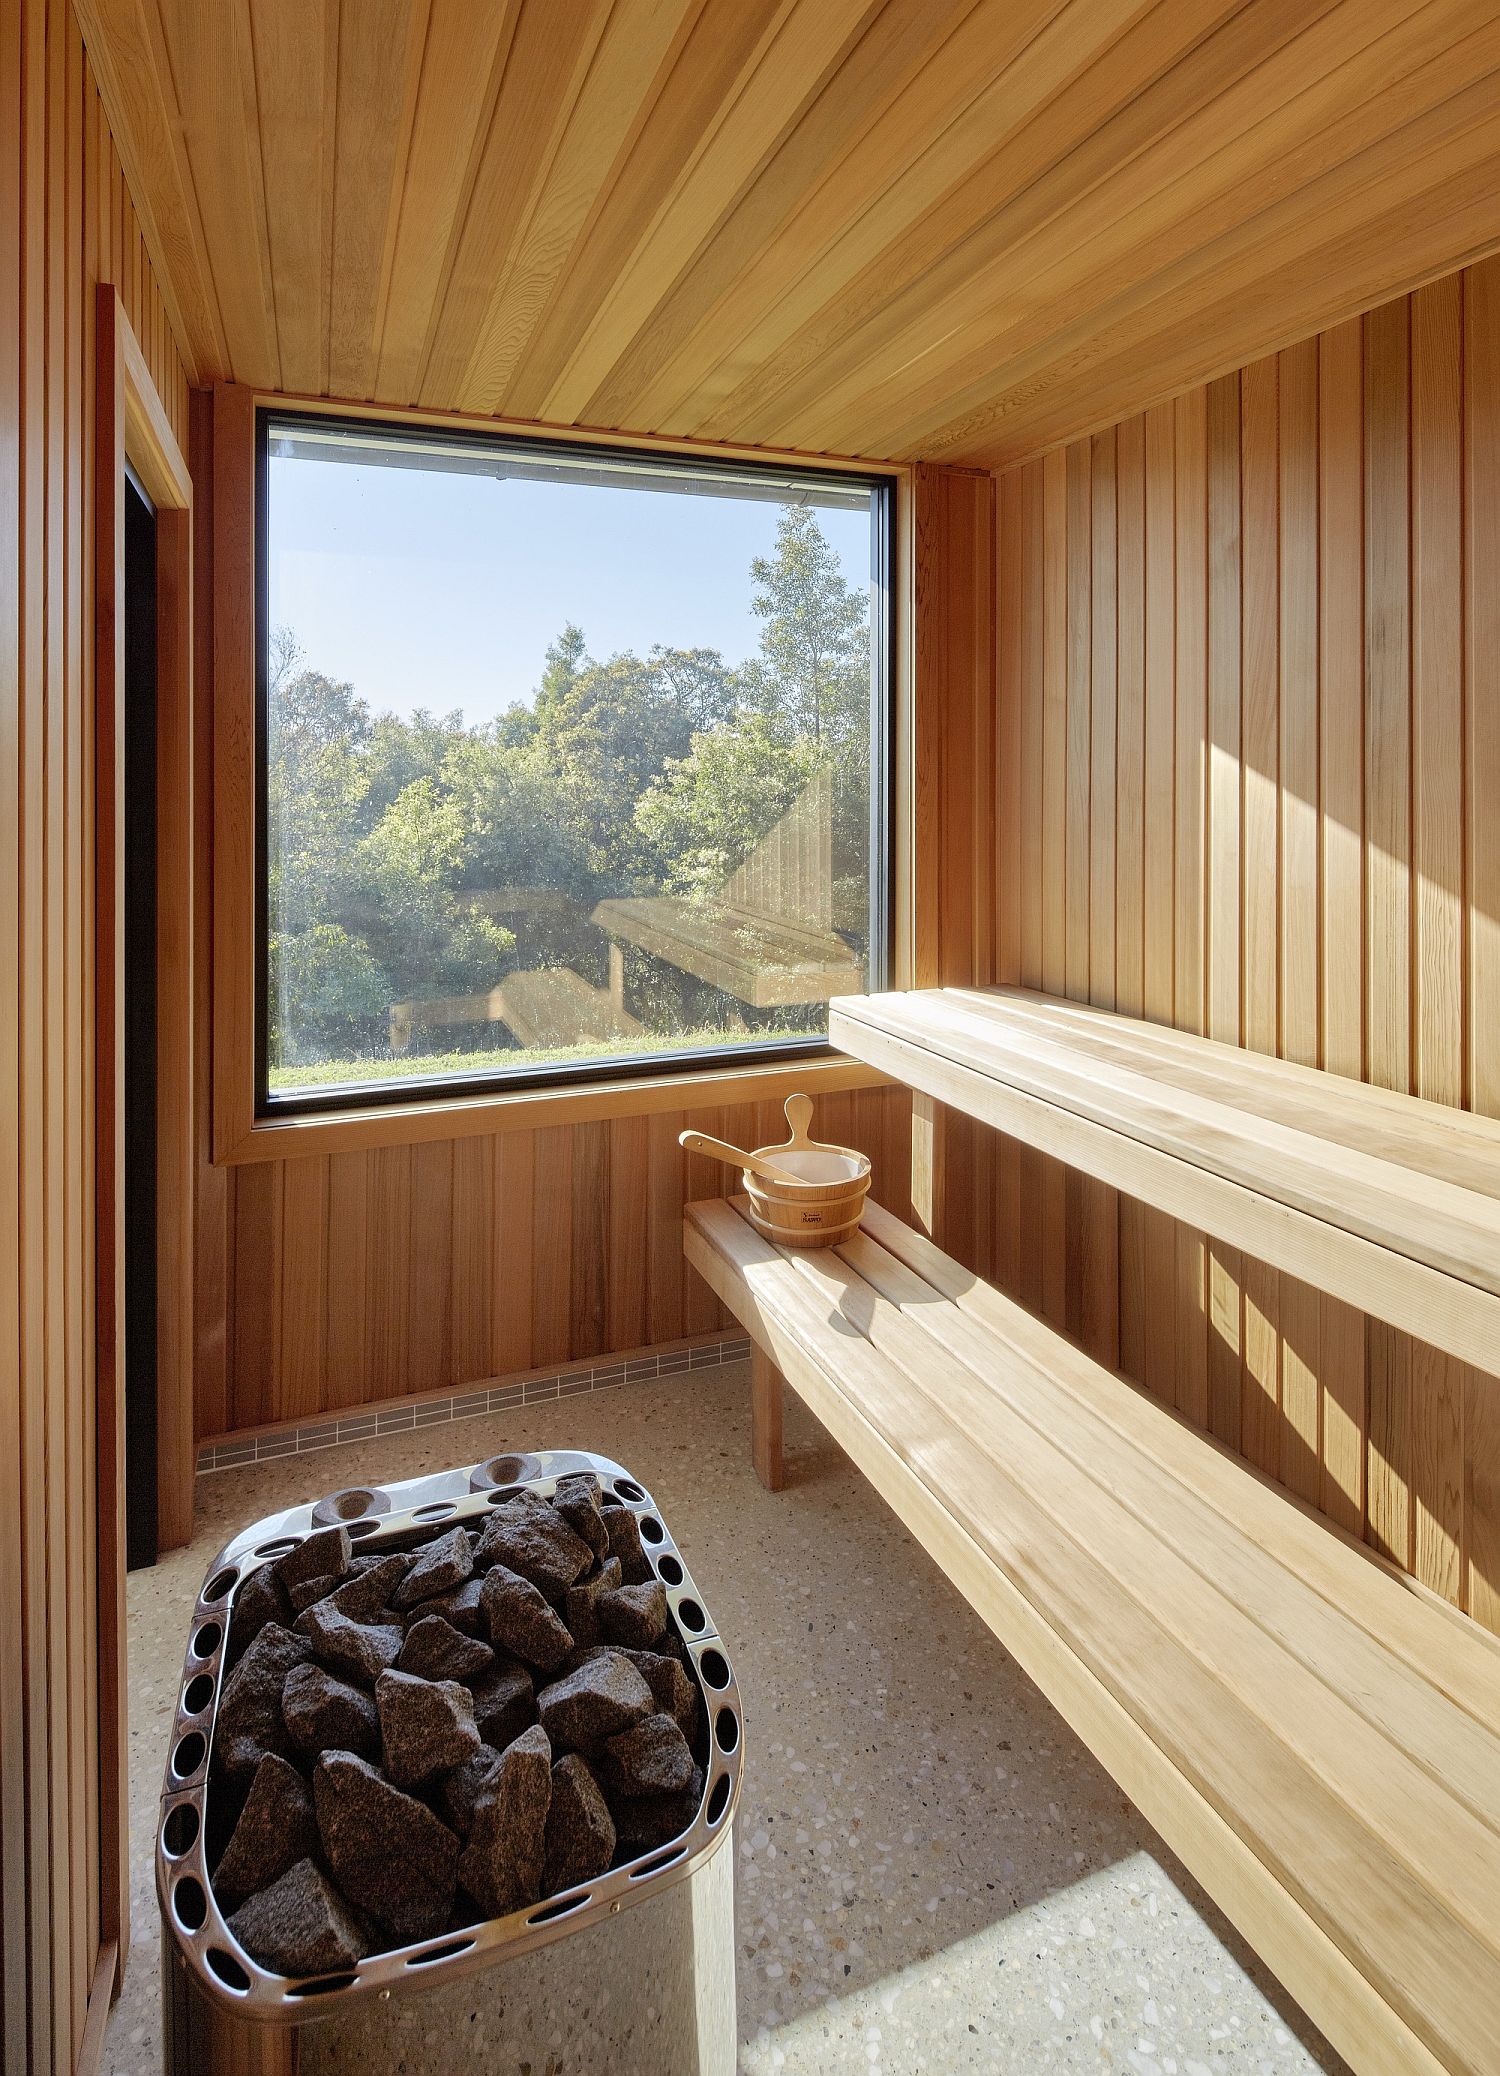 Wooden sauna overlooking the valleys beyond